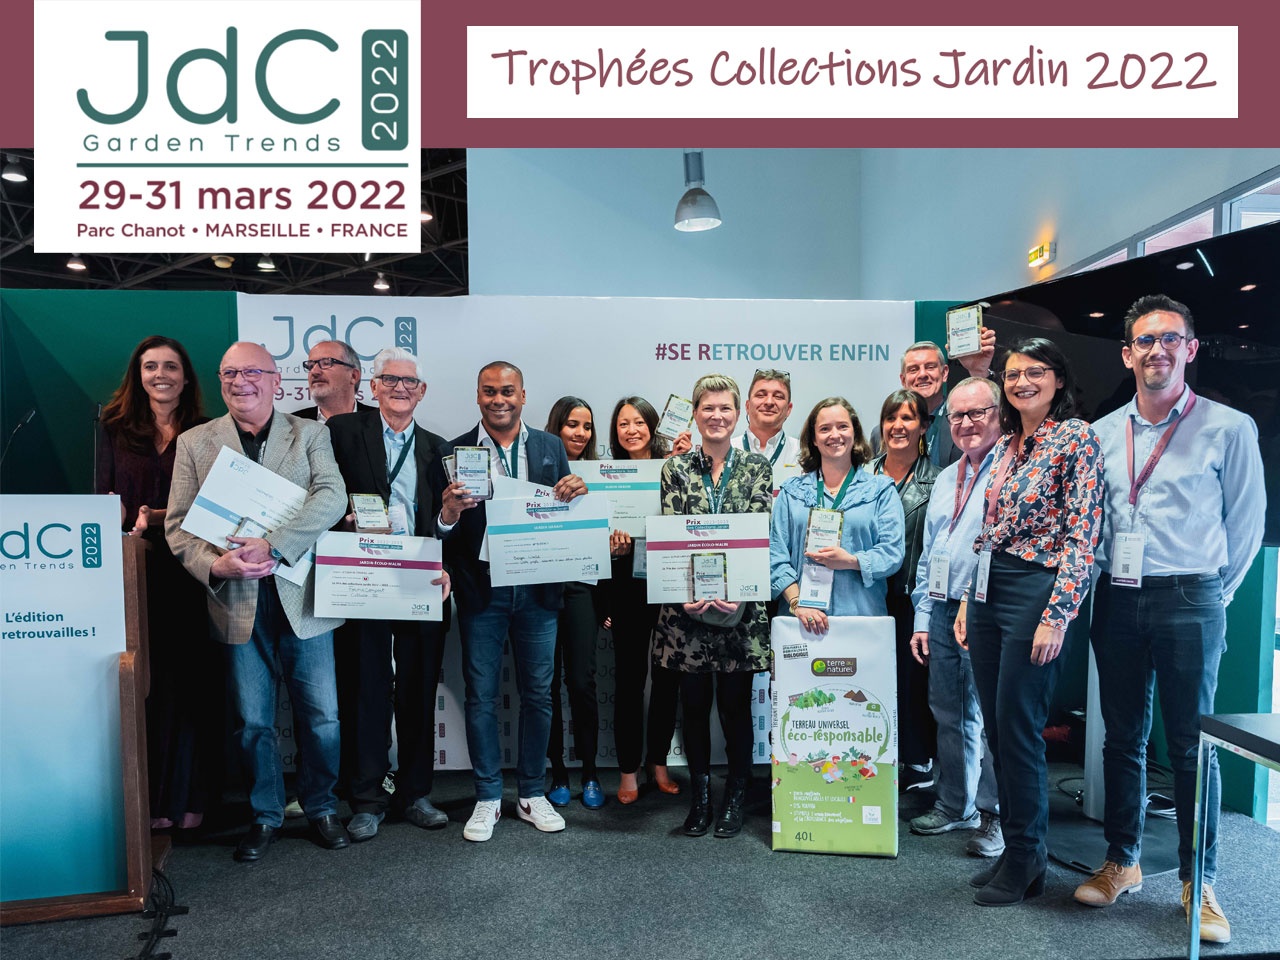 Les JdC Garden Trends : Résultats des Trophées Collections Jardin 2022